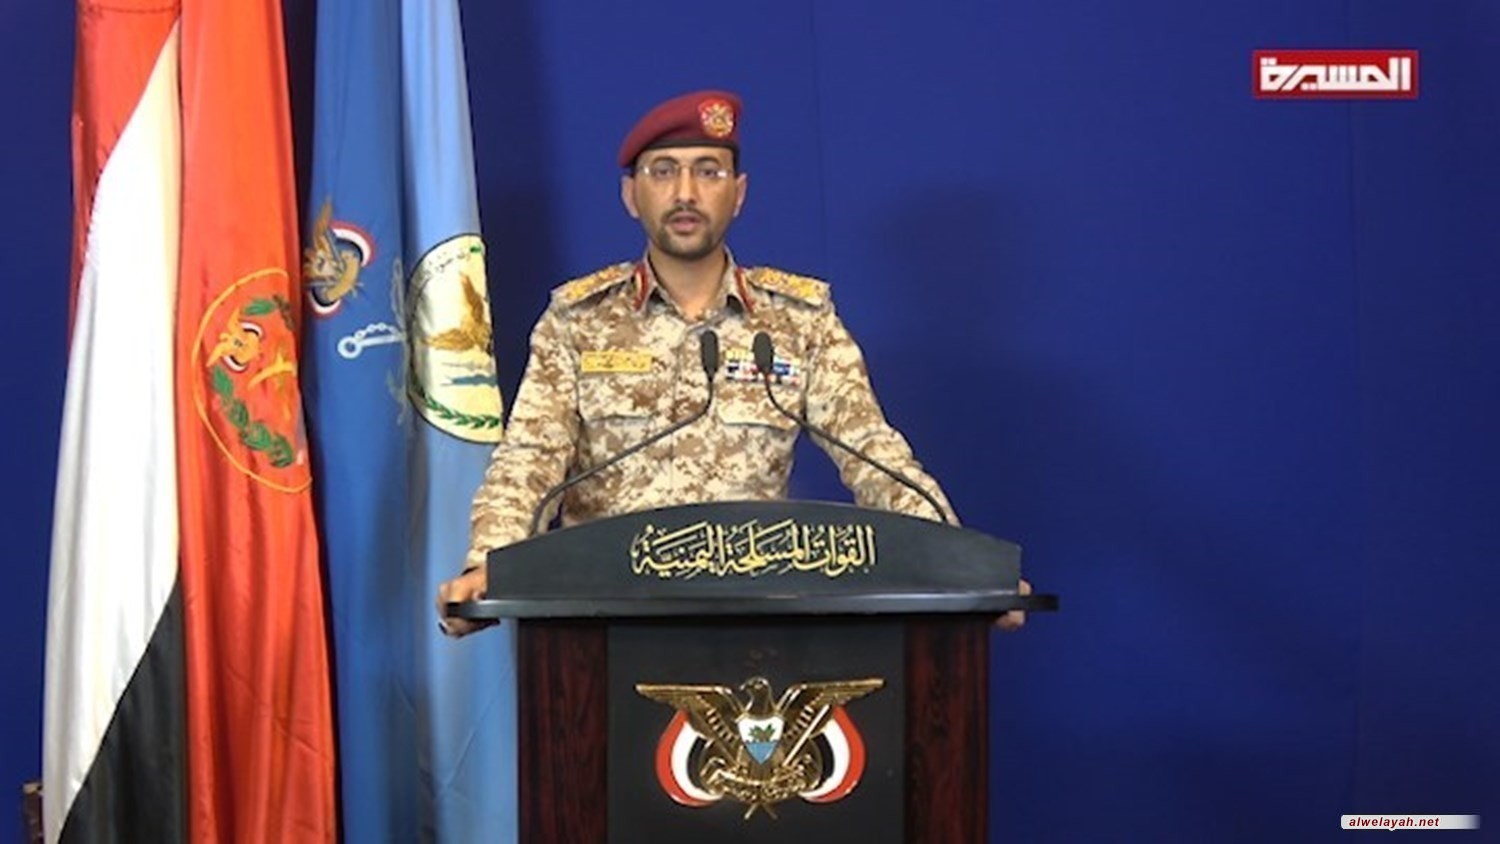 القوات المسلحة اليمنية تكشف تفاصيل عملية "فجر الصحراء" في منطقة اليتمة بالجوف